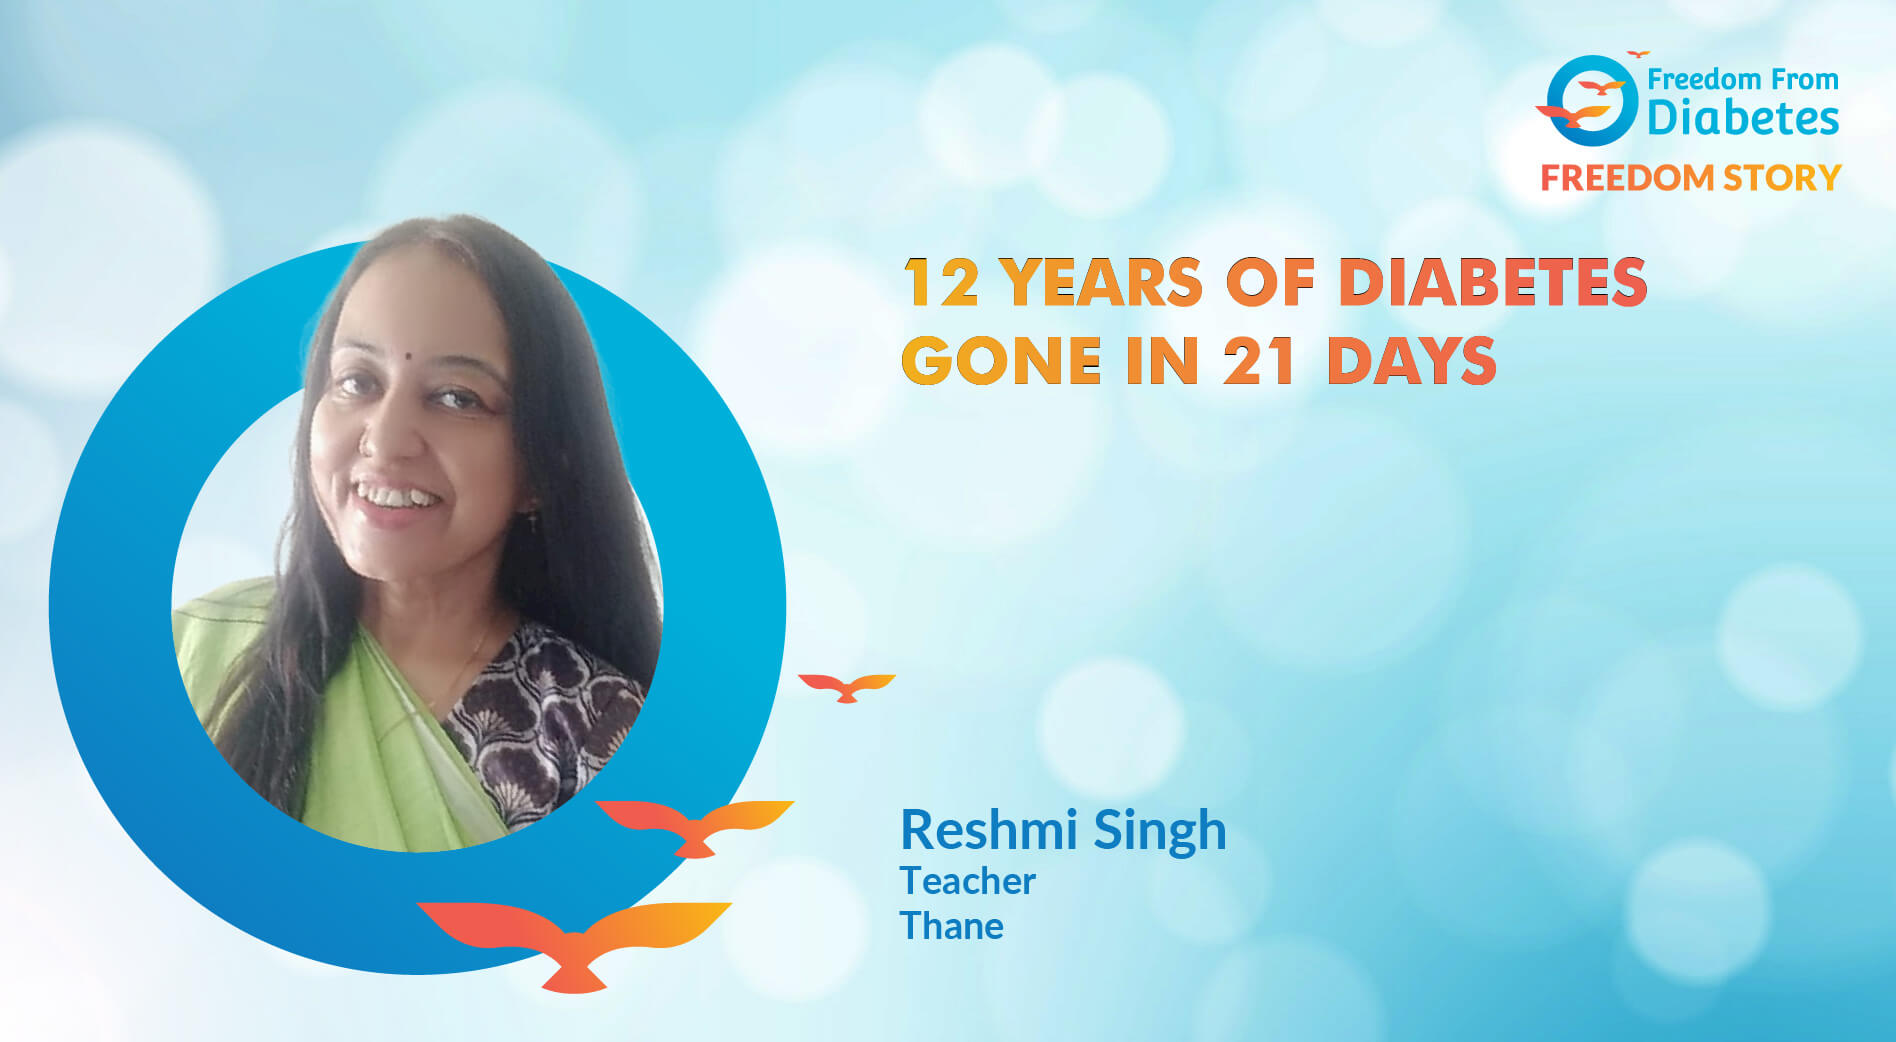 Reshmi Singh: 12 Years of Diabetes Reversed in 21 Days